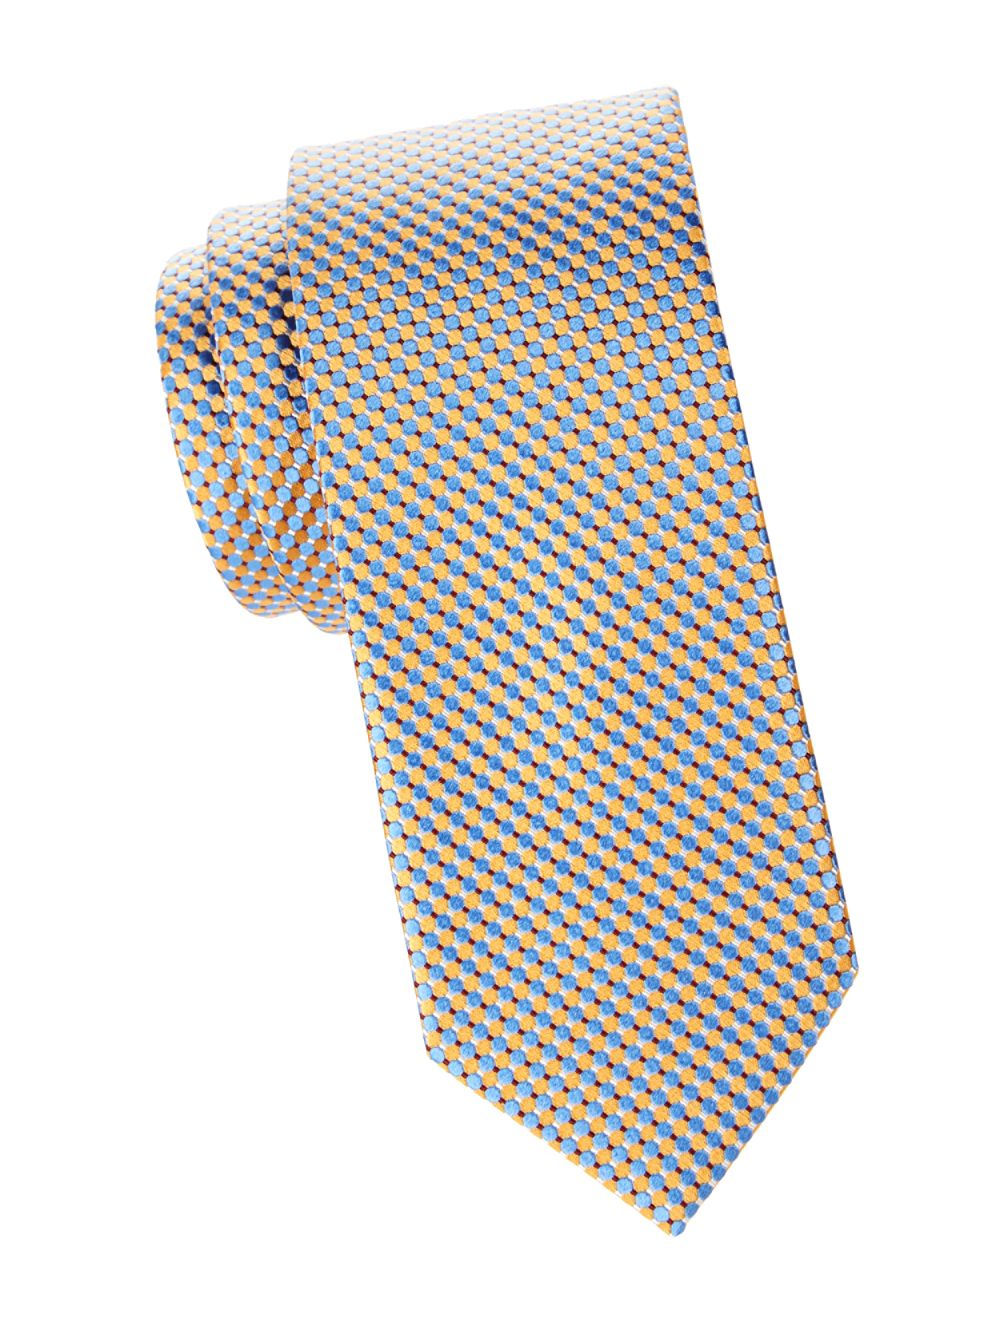 Шелковый галстук с мелкими кругами Eton, желтый